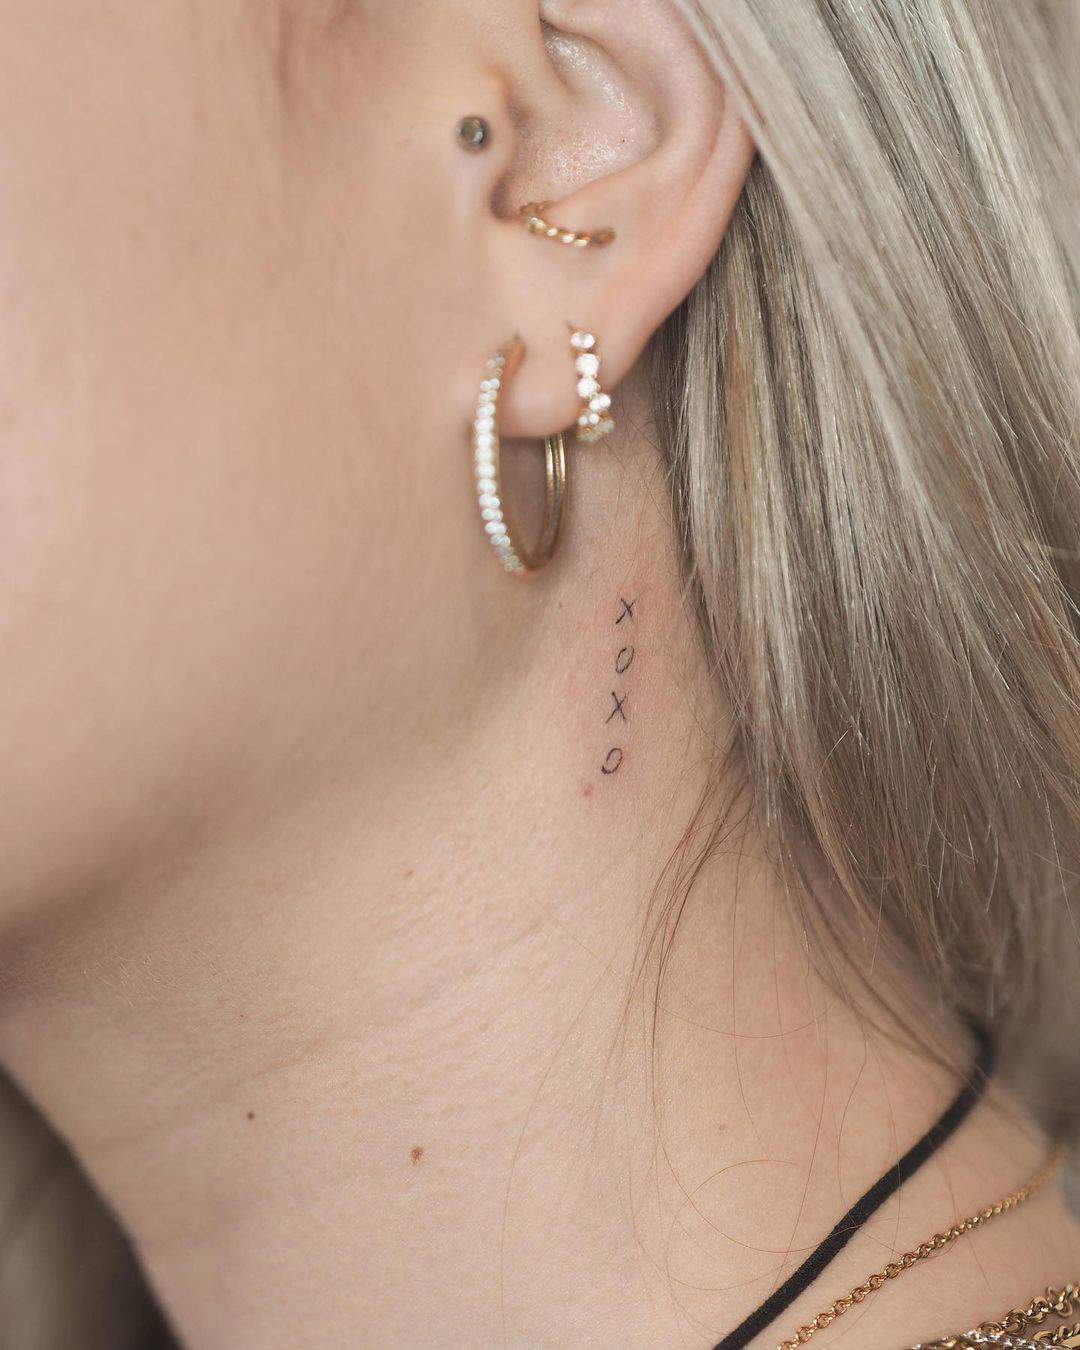 Tatuaje en el cuello minimalista hecho por Marina Molist